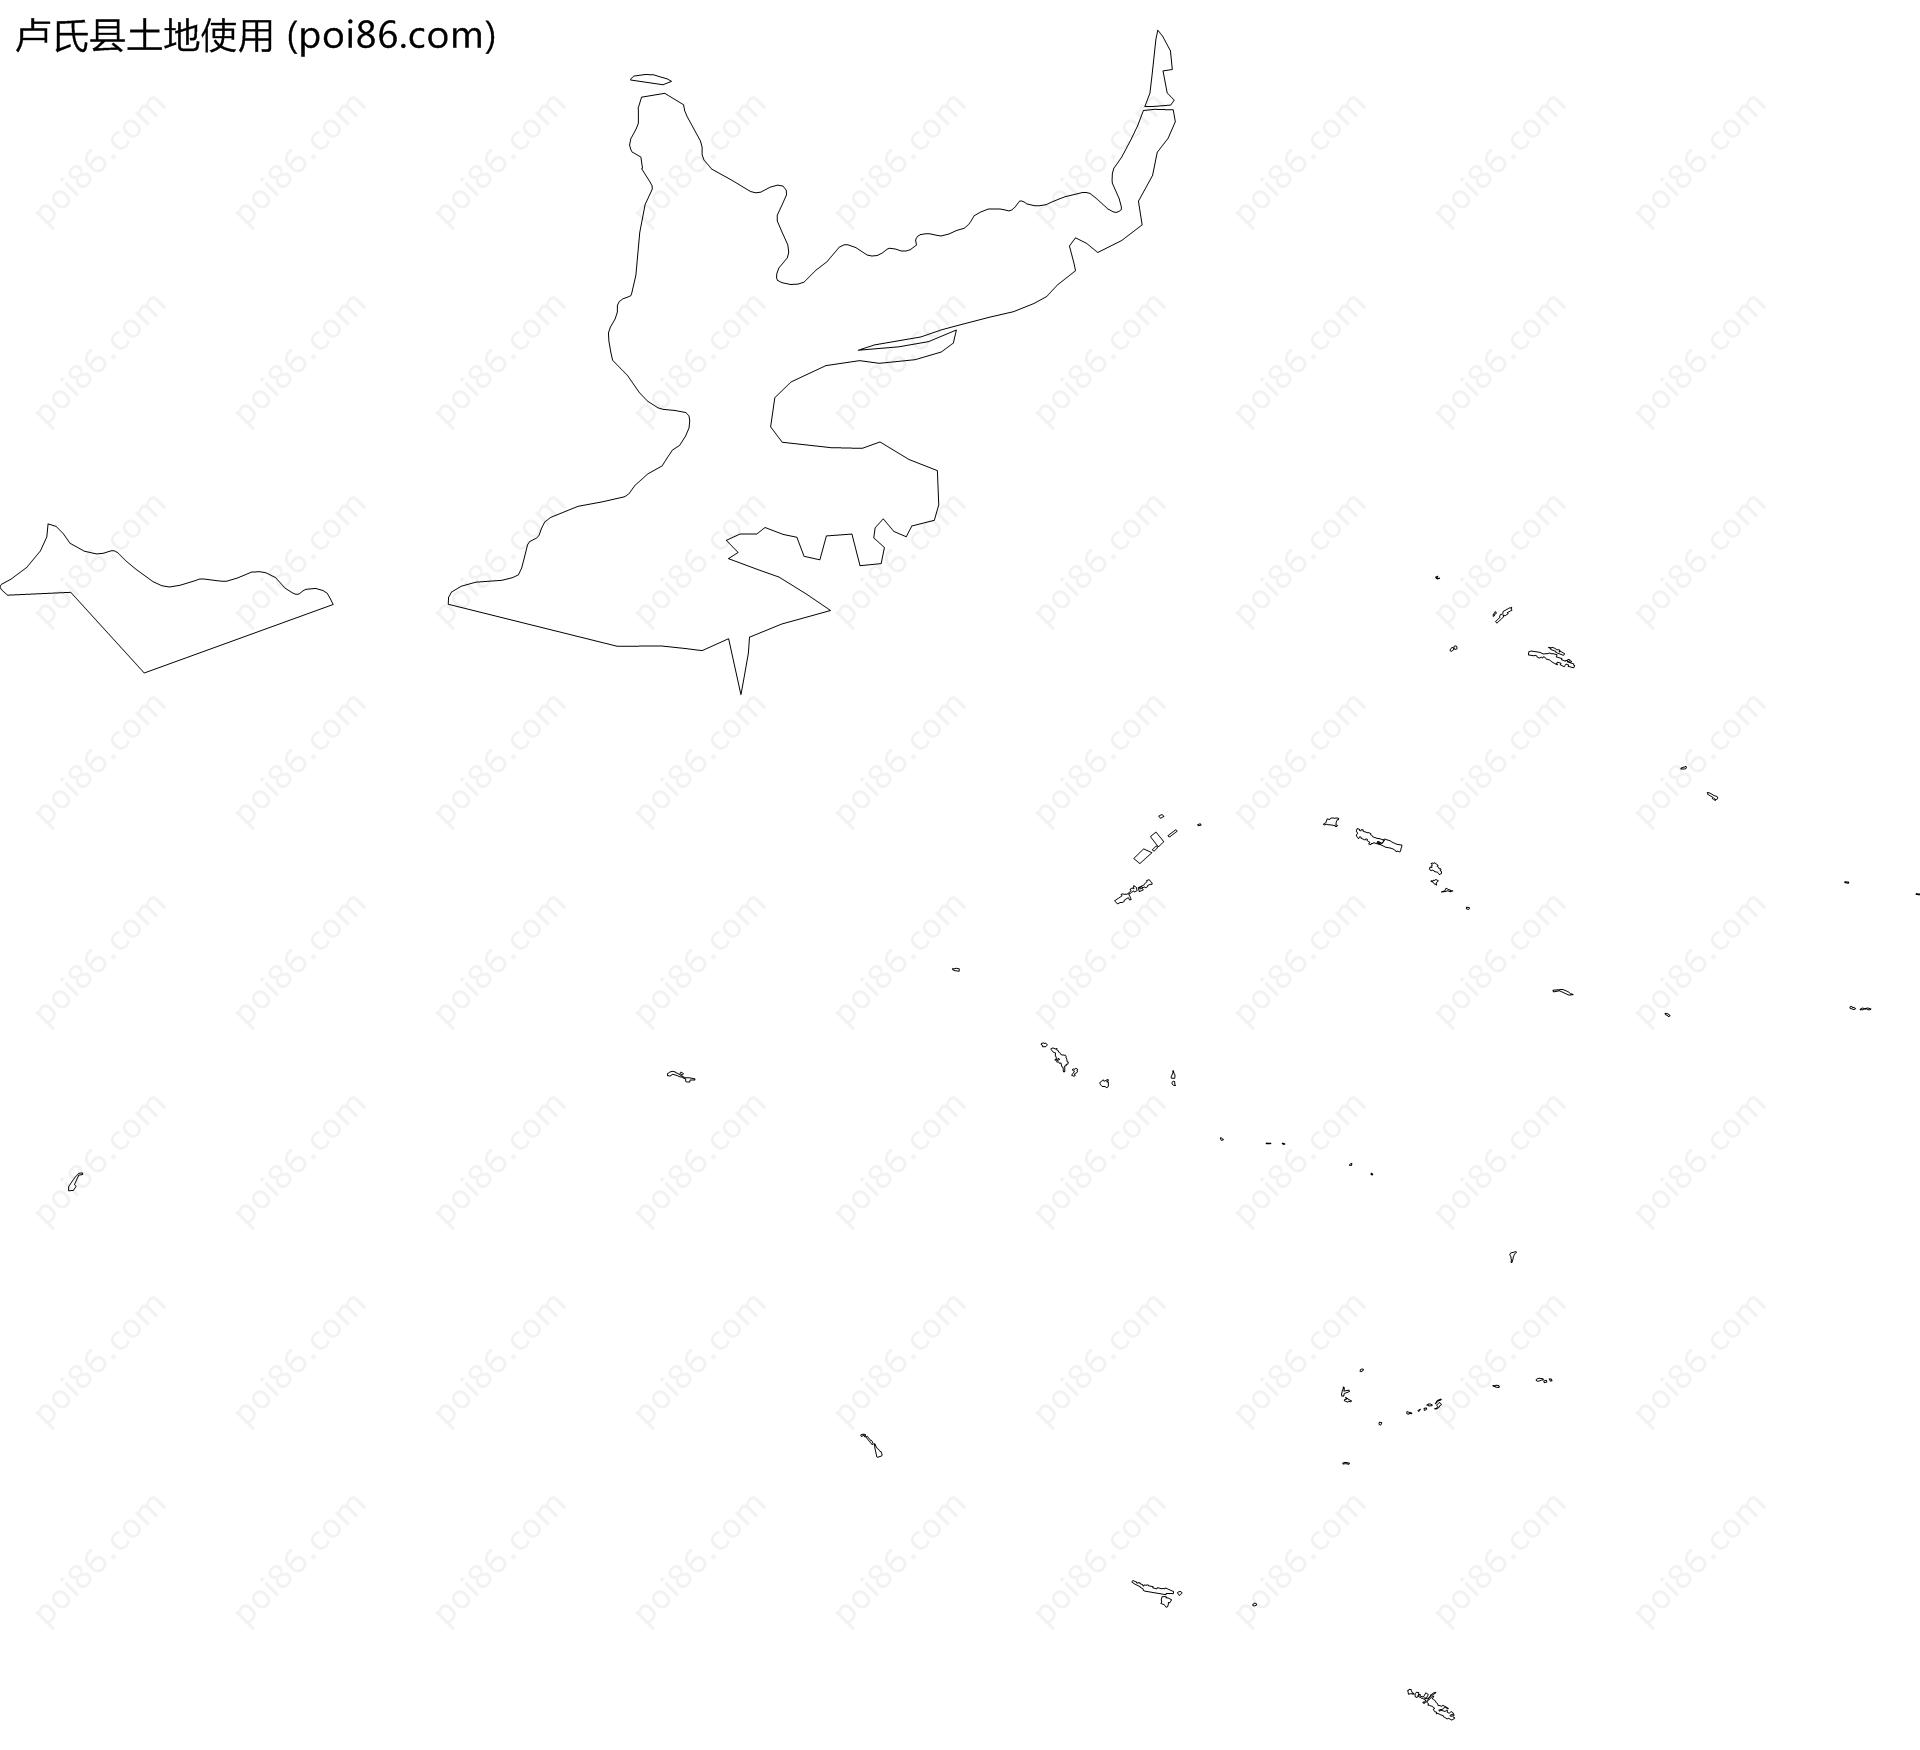 卢氏县土地使用地图